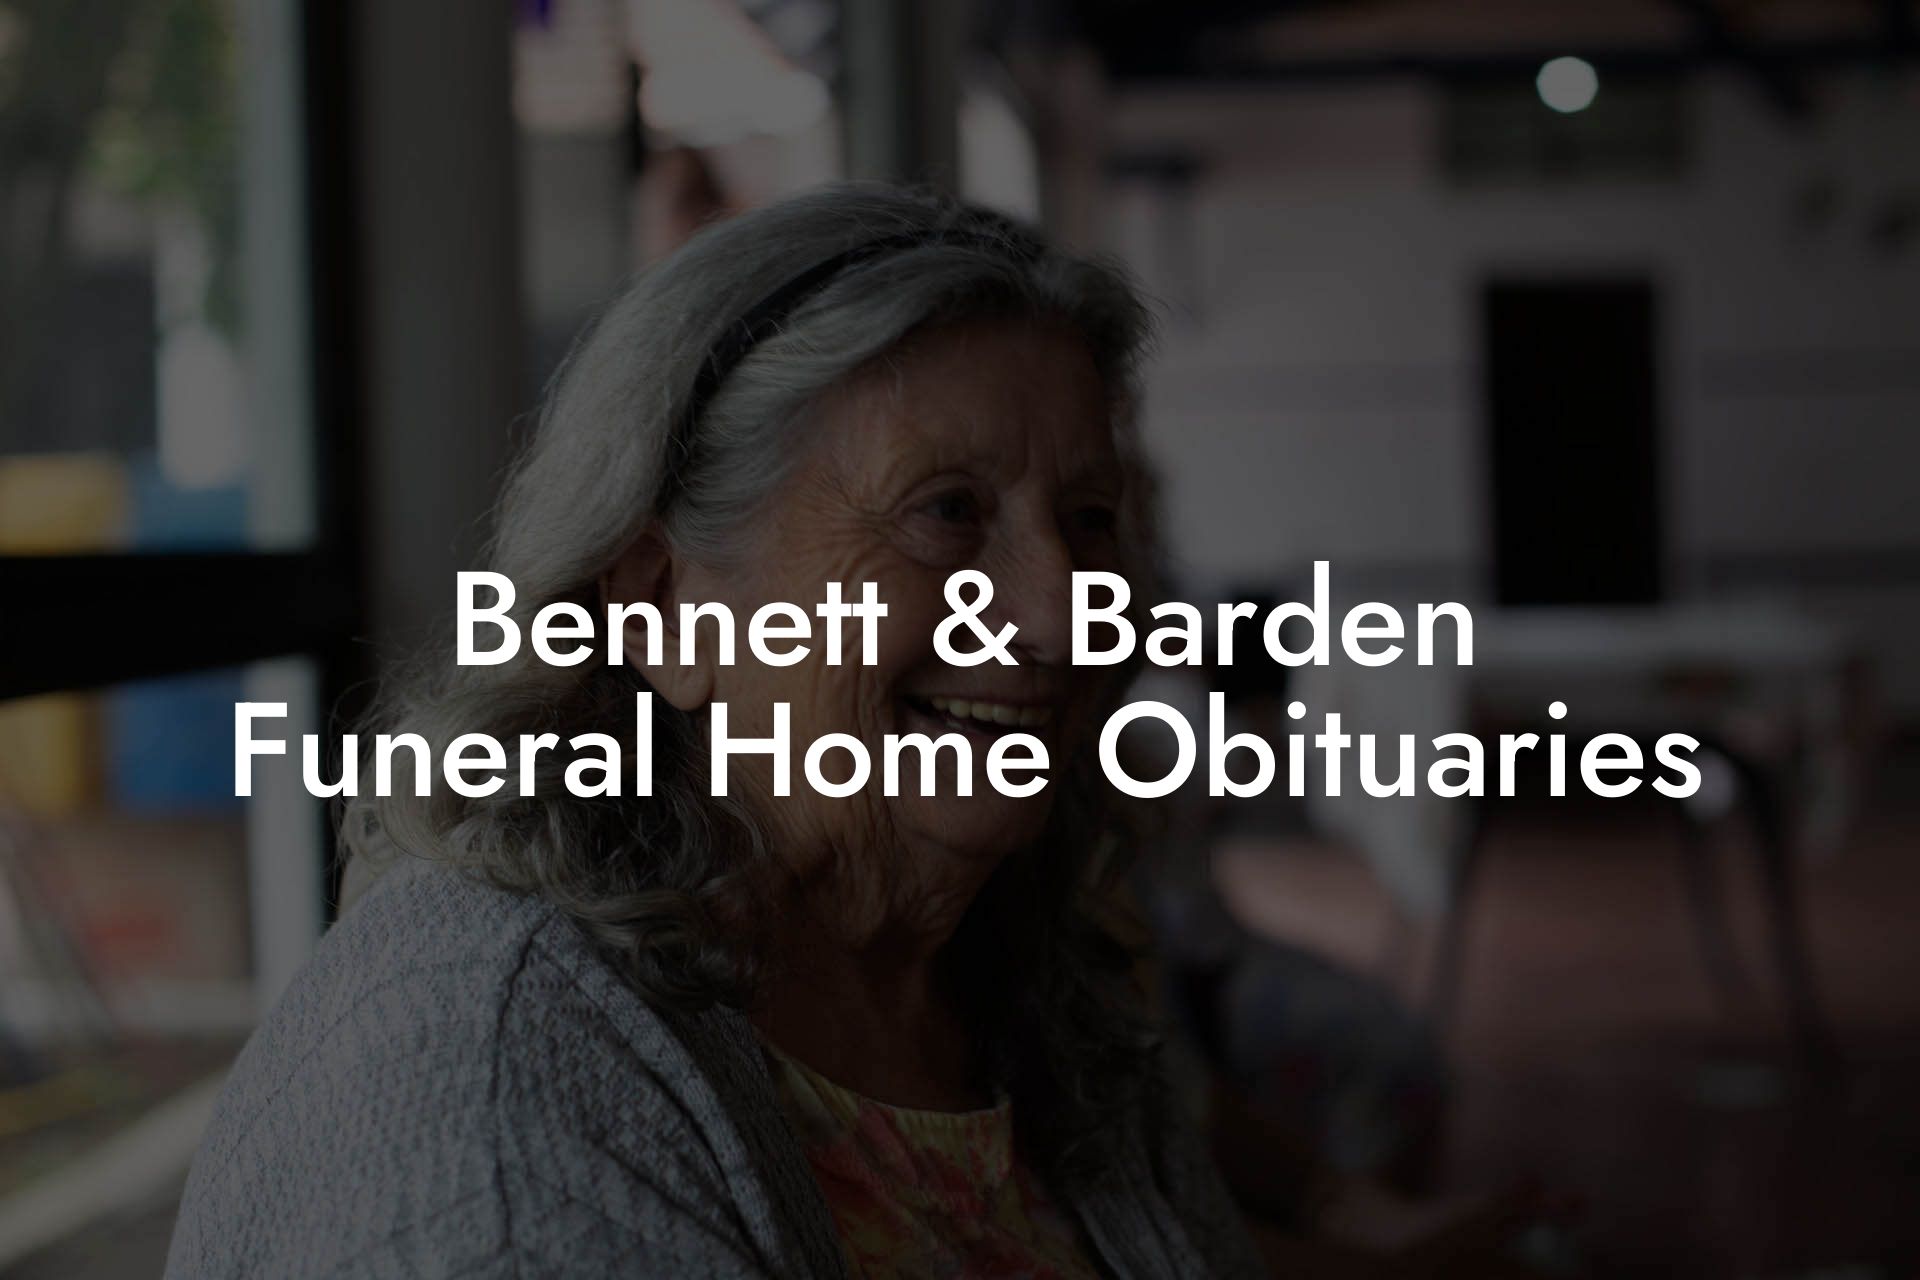 Bennett & Barden Funeral Home Obituaries